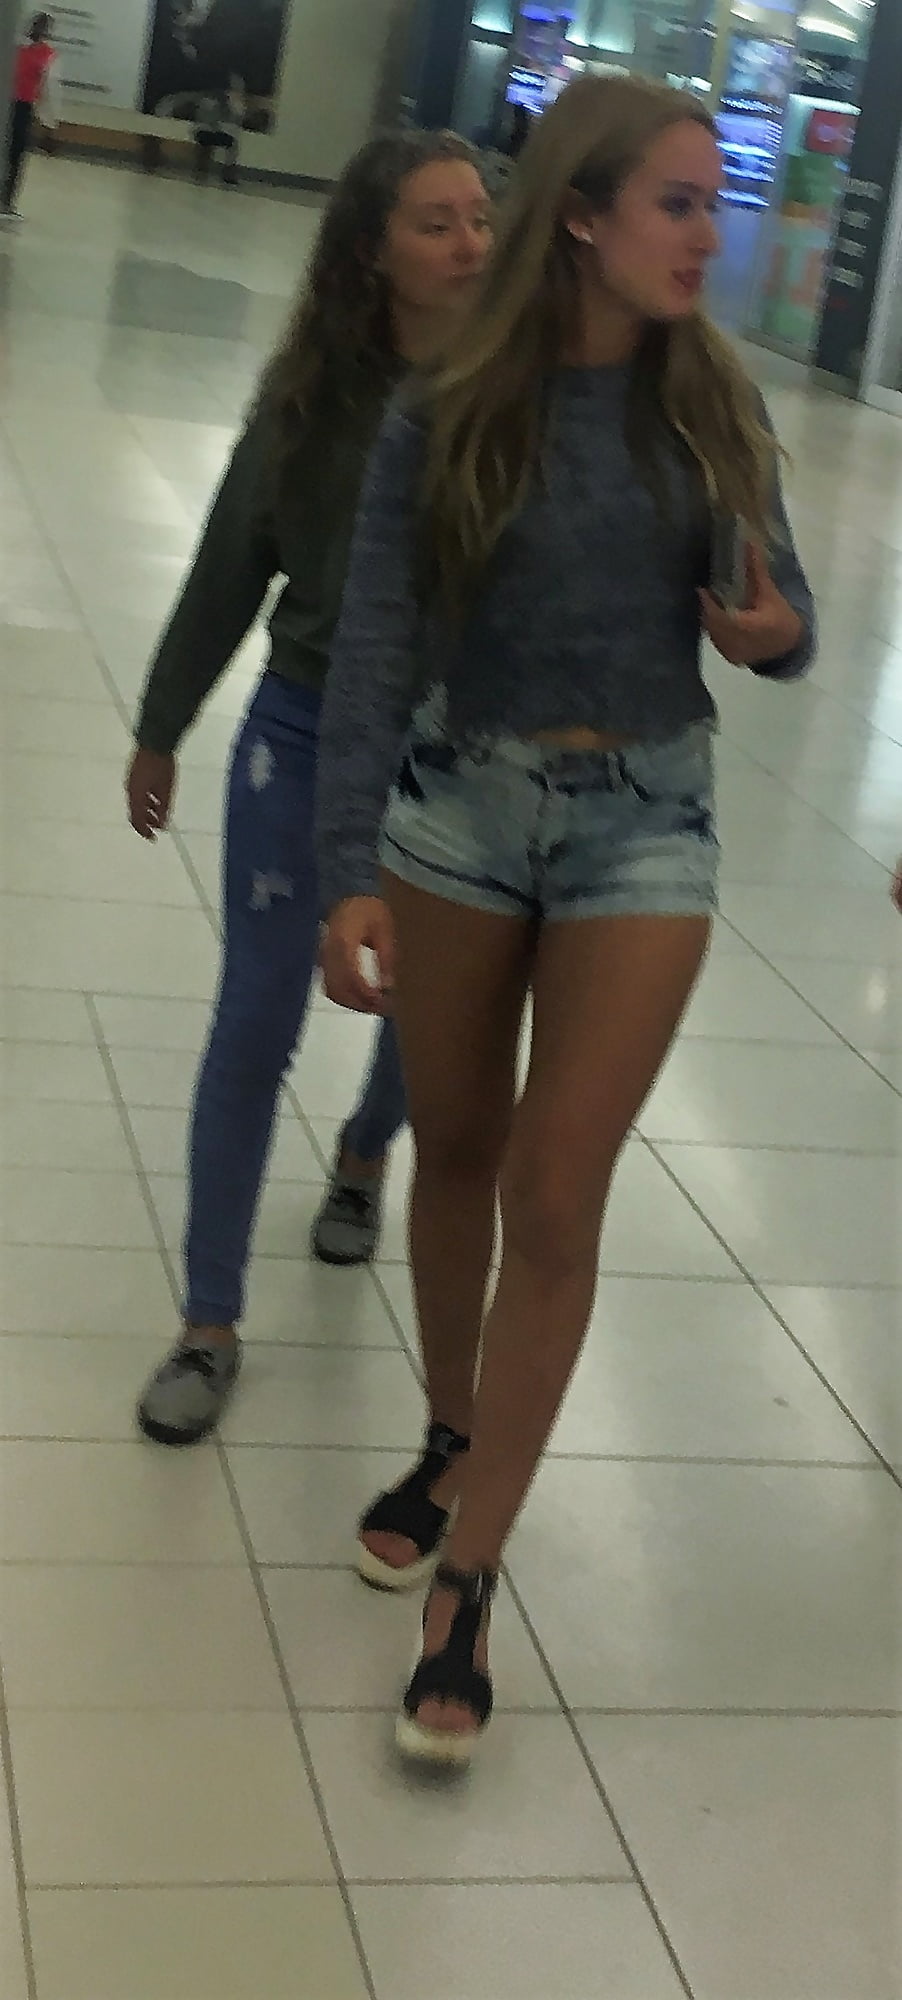 Lovely teen mall slut in tiny shorts (19/22)